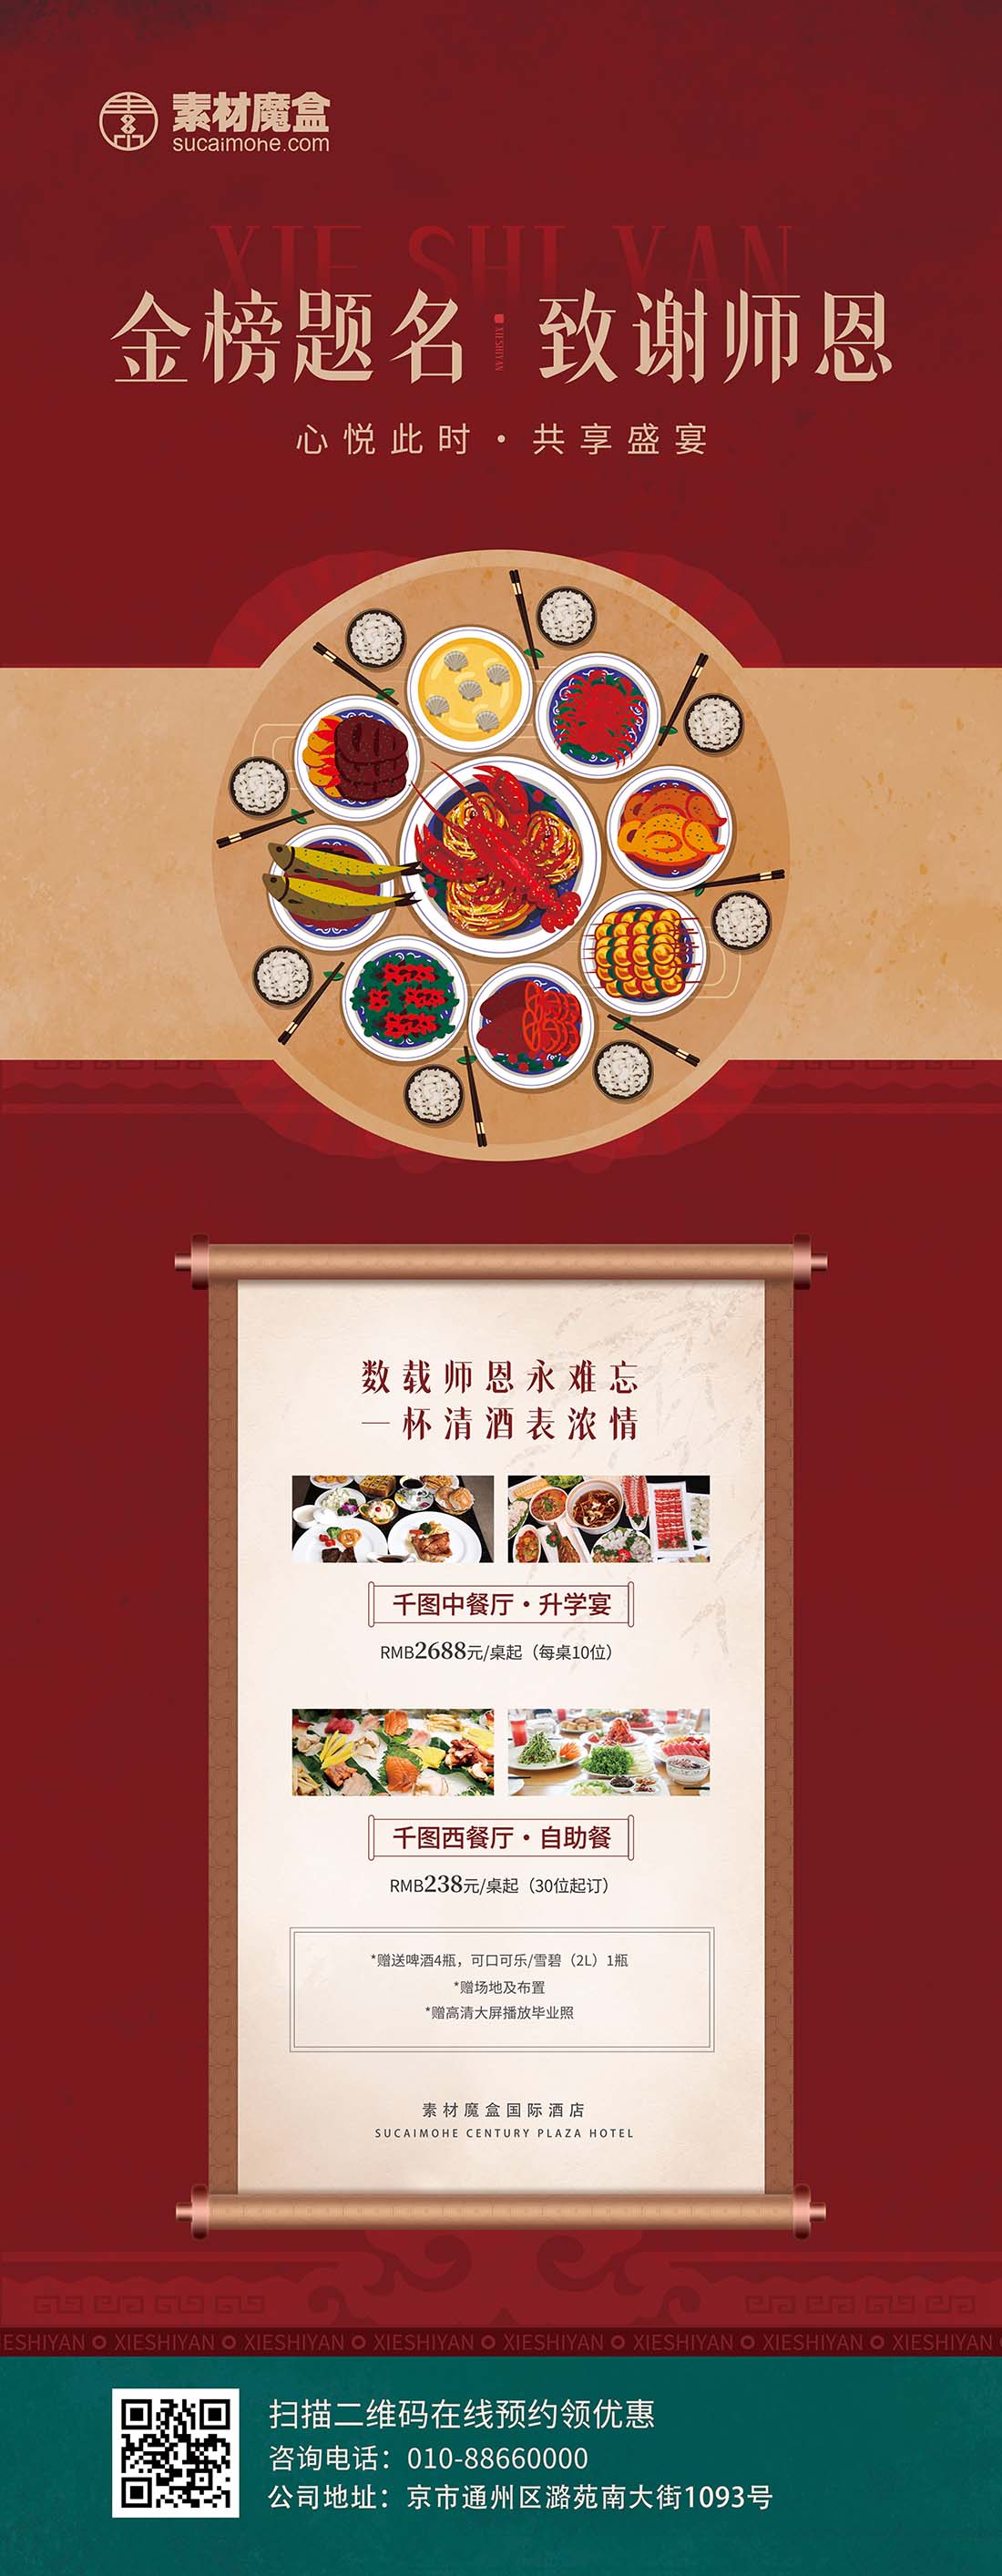 谢师宴美食套餐促销中国风宣传易拉宝PSD源文件